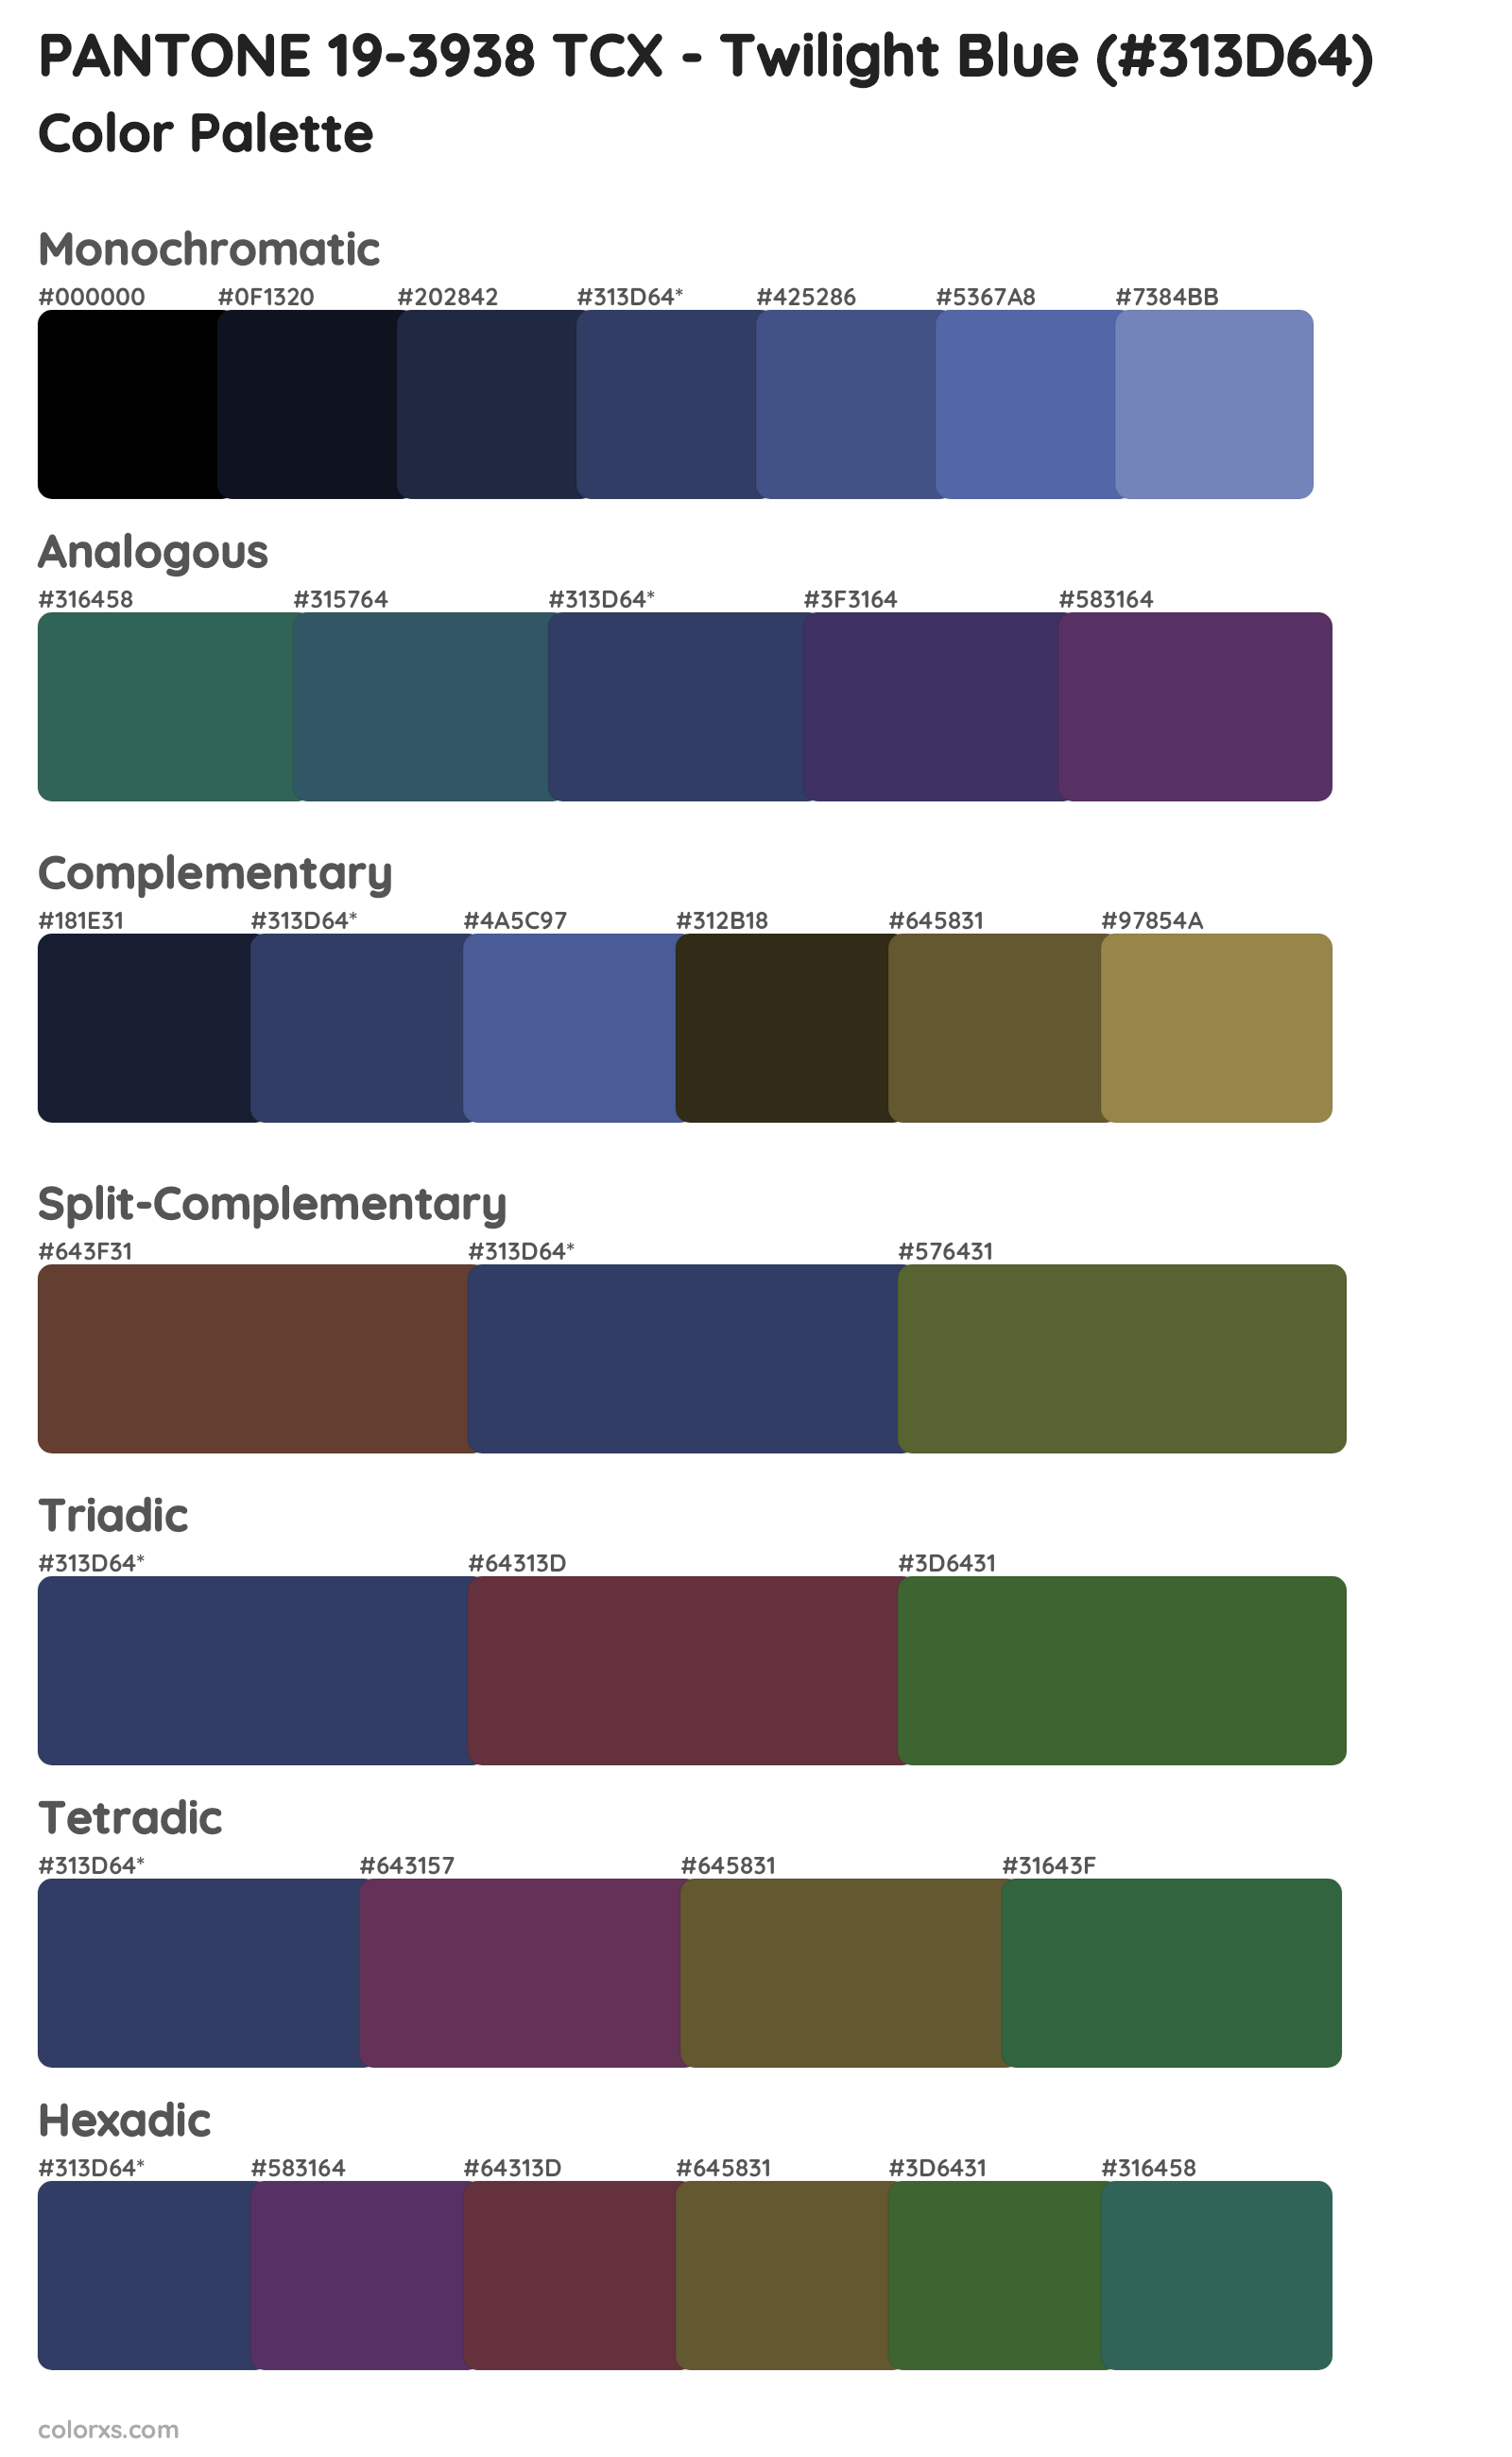 PANTONE 19-3938 TCX - Twilight Blue Color Scheme Palettes